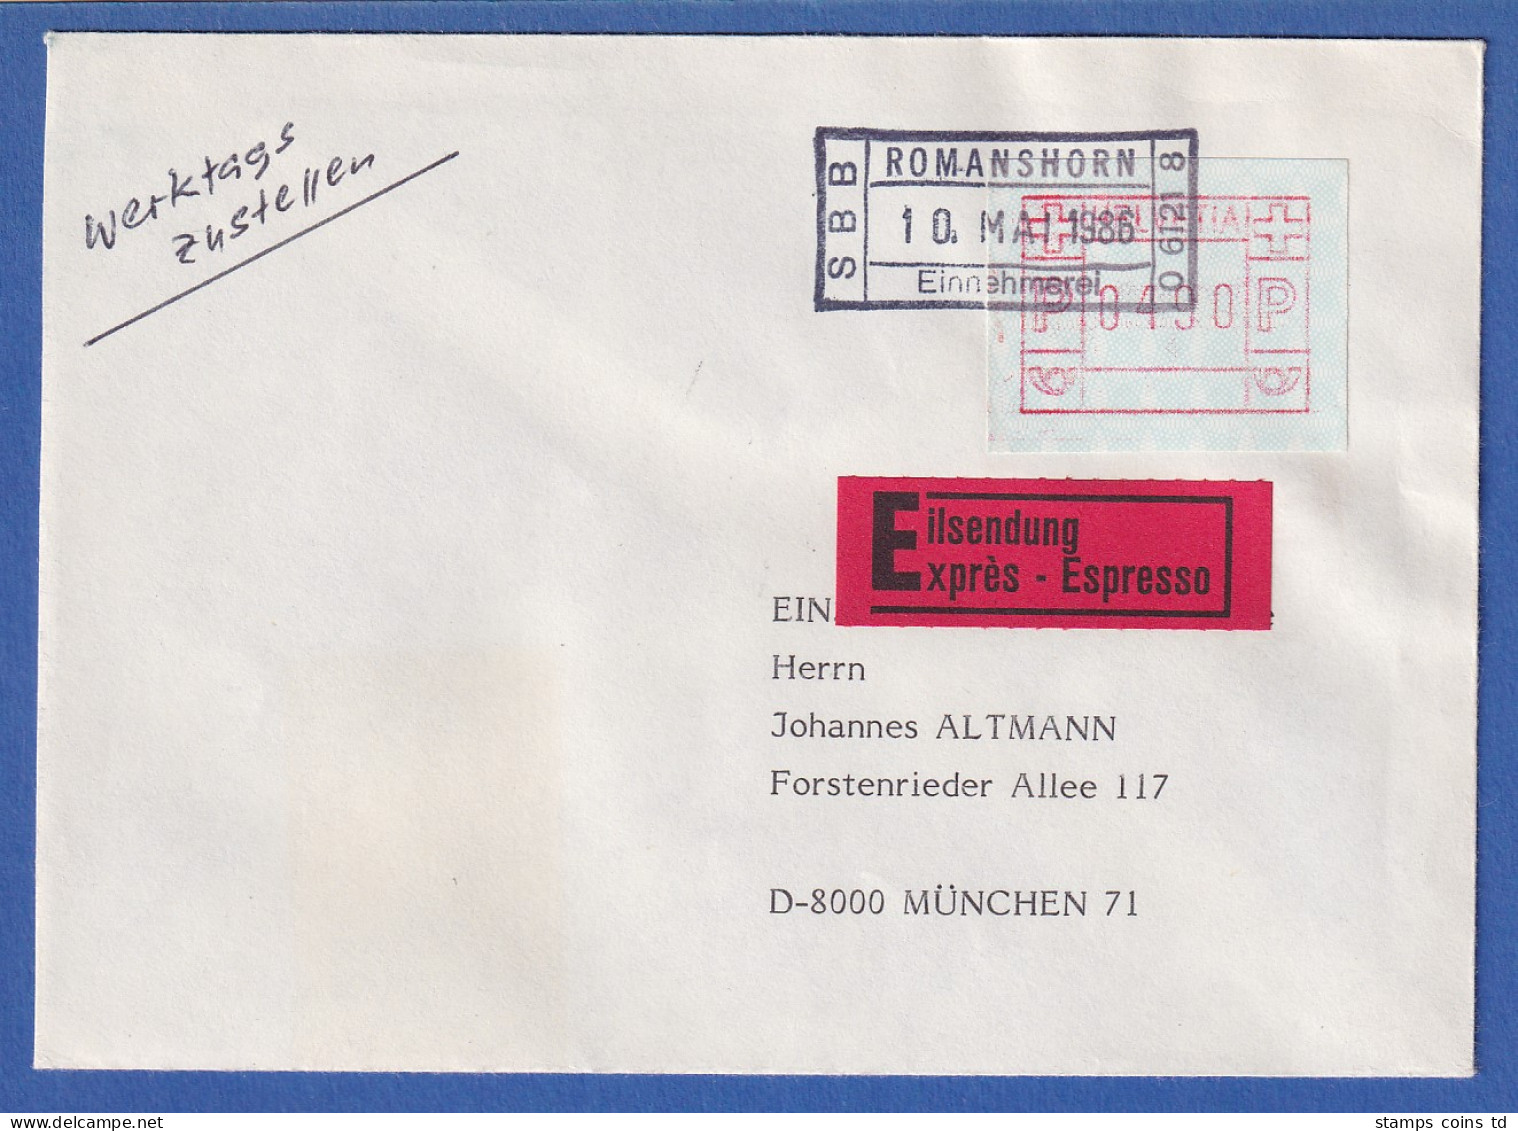 Schweiz FRAMA-ATM Mi-Nr. 3.5b Wert 490 Auf Eilbrief Aus Romanshorn Nach München - Automatic Stamps